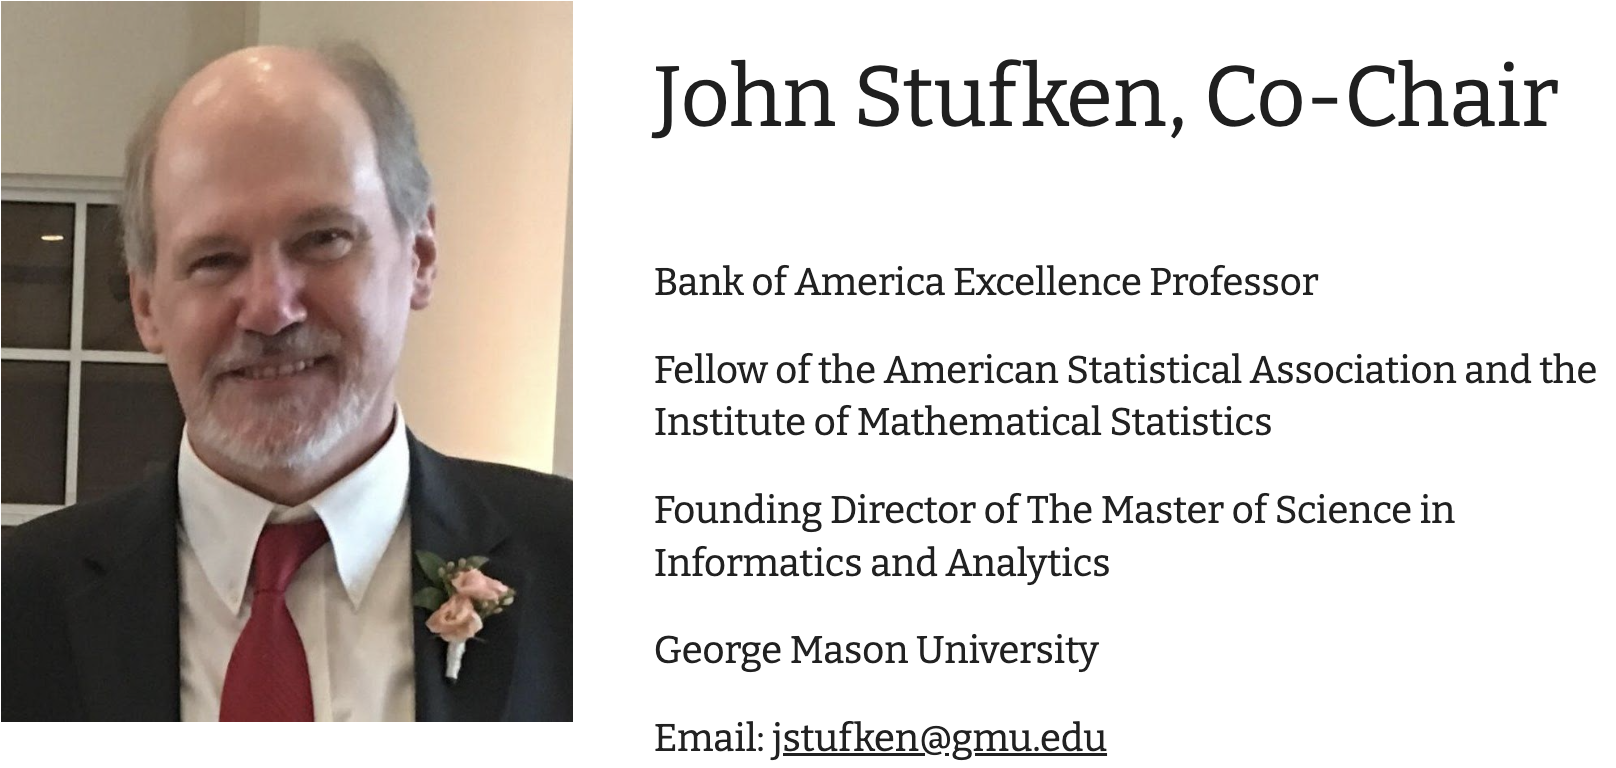 John Stufken, Co-Chair. Click to email him at jstufken@gmu.edu